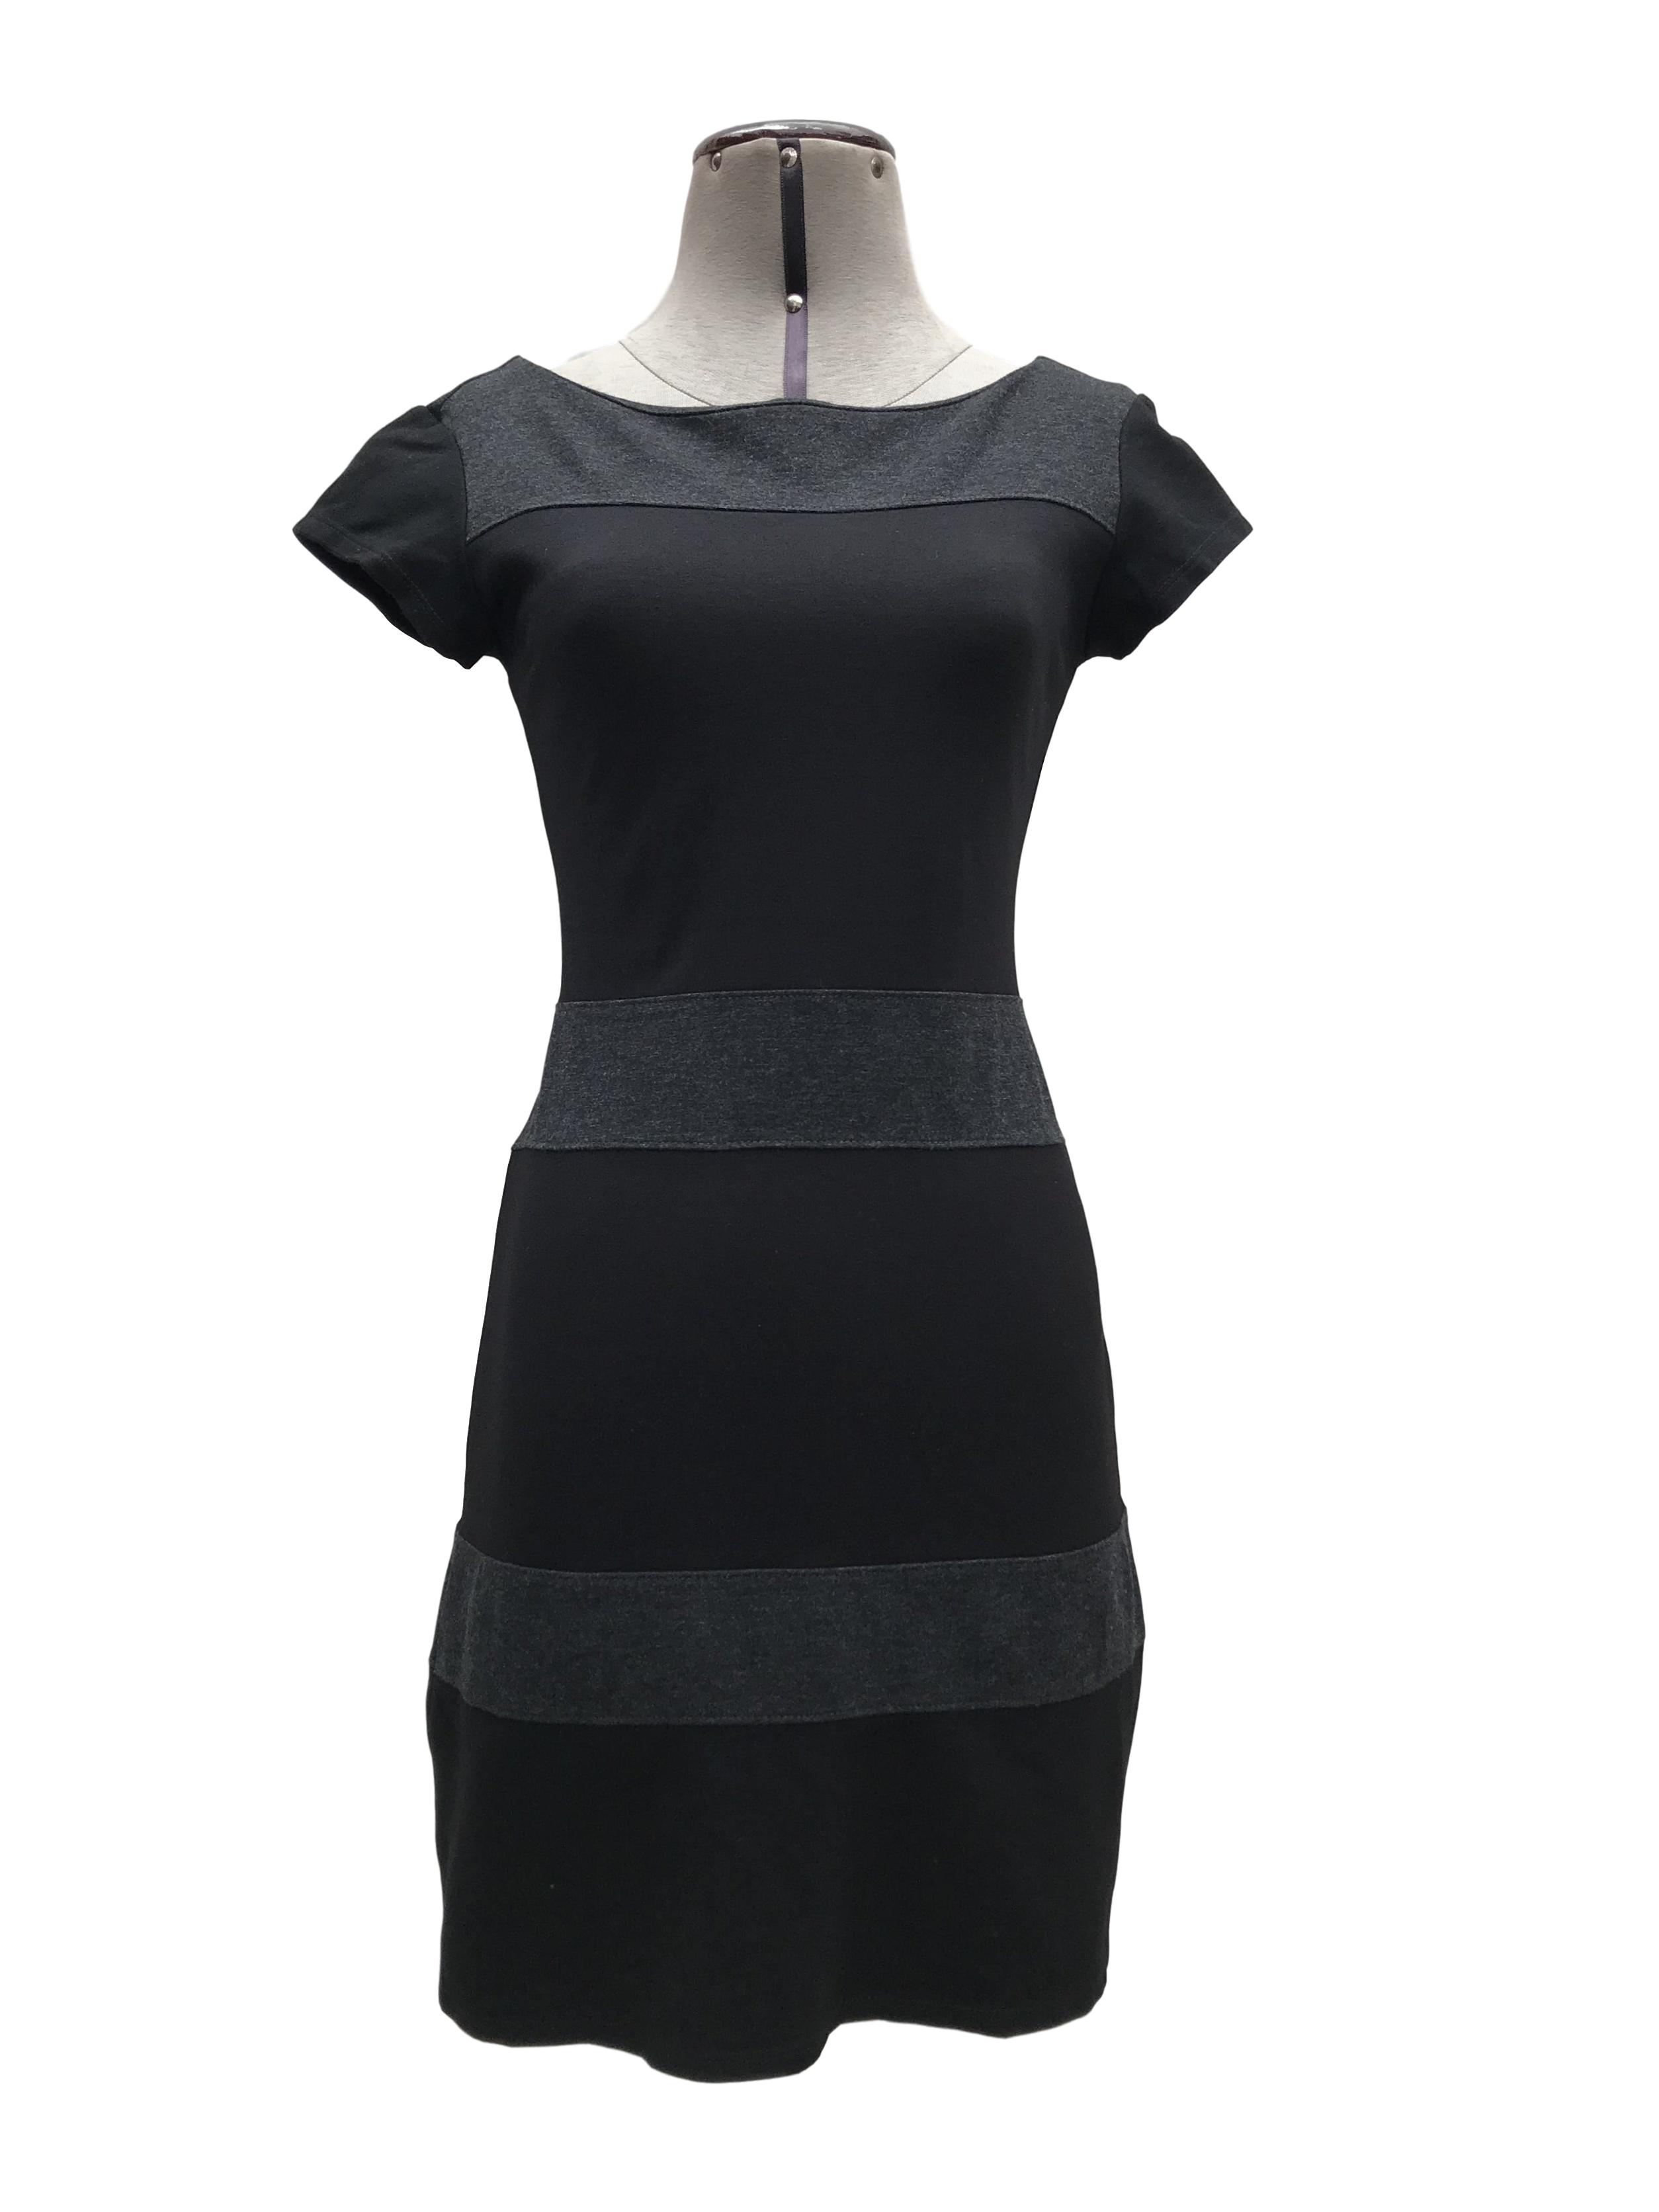 Vestido Basement en franjas horizontales negro y gris, tela gruesa ligeramente stretch. Largo 82cm